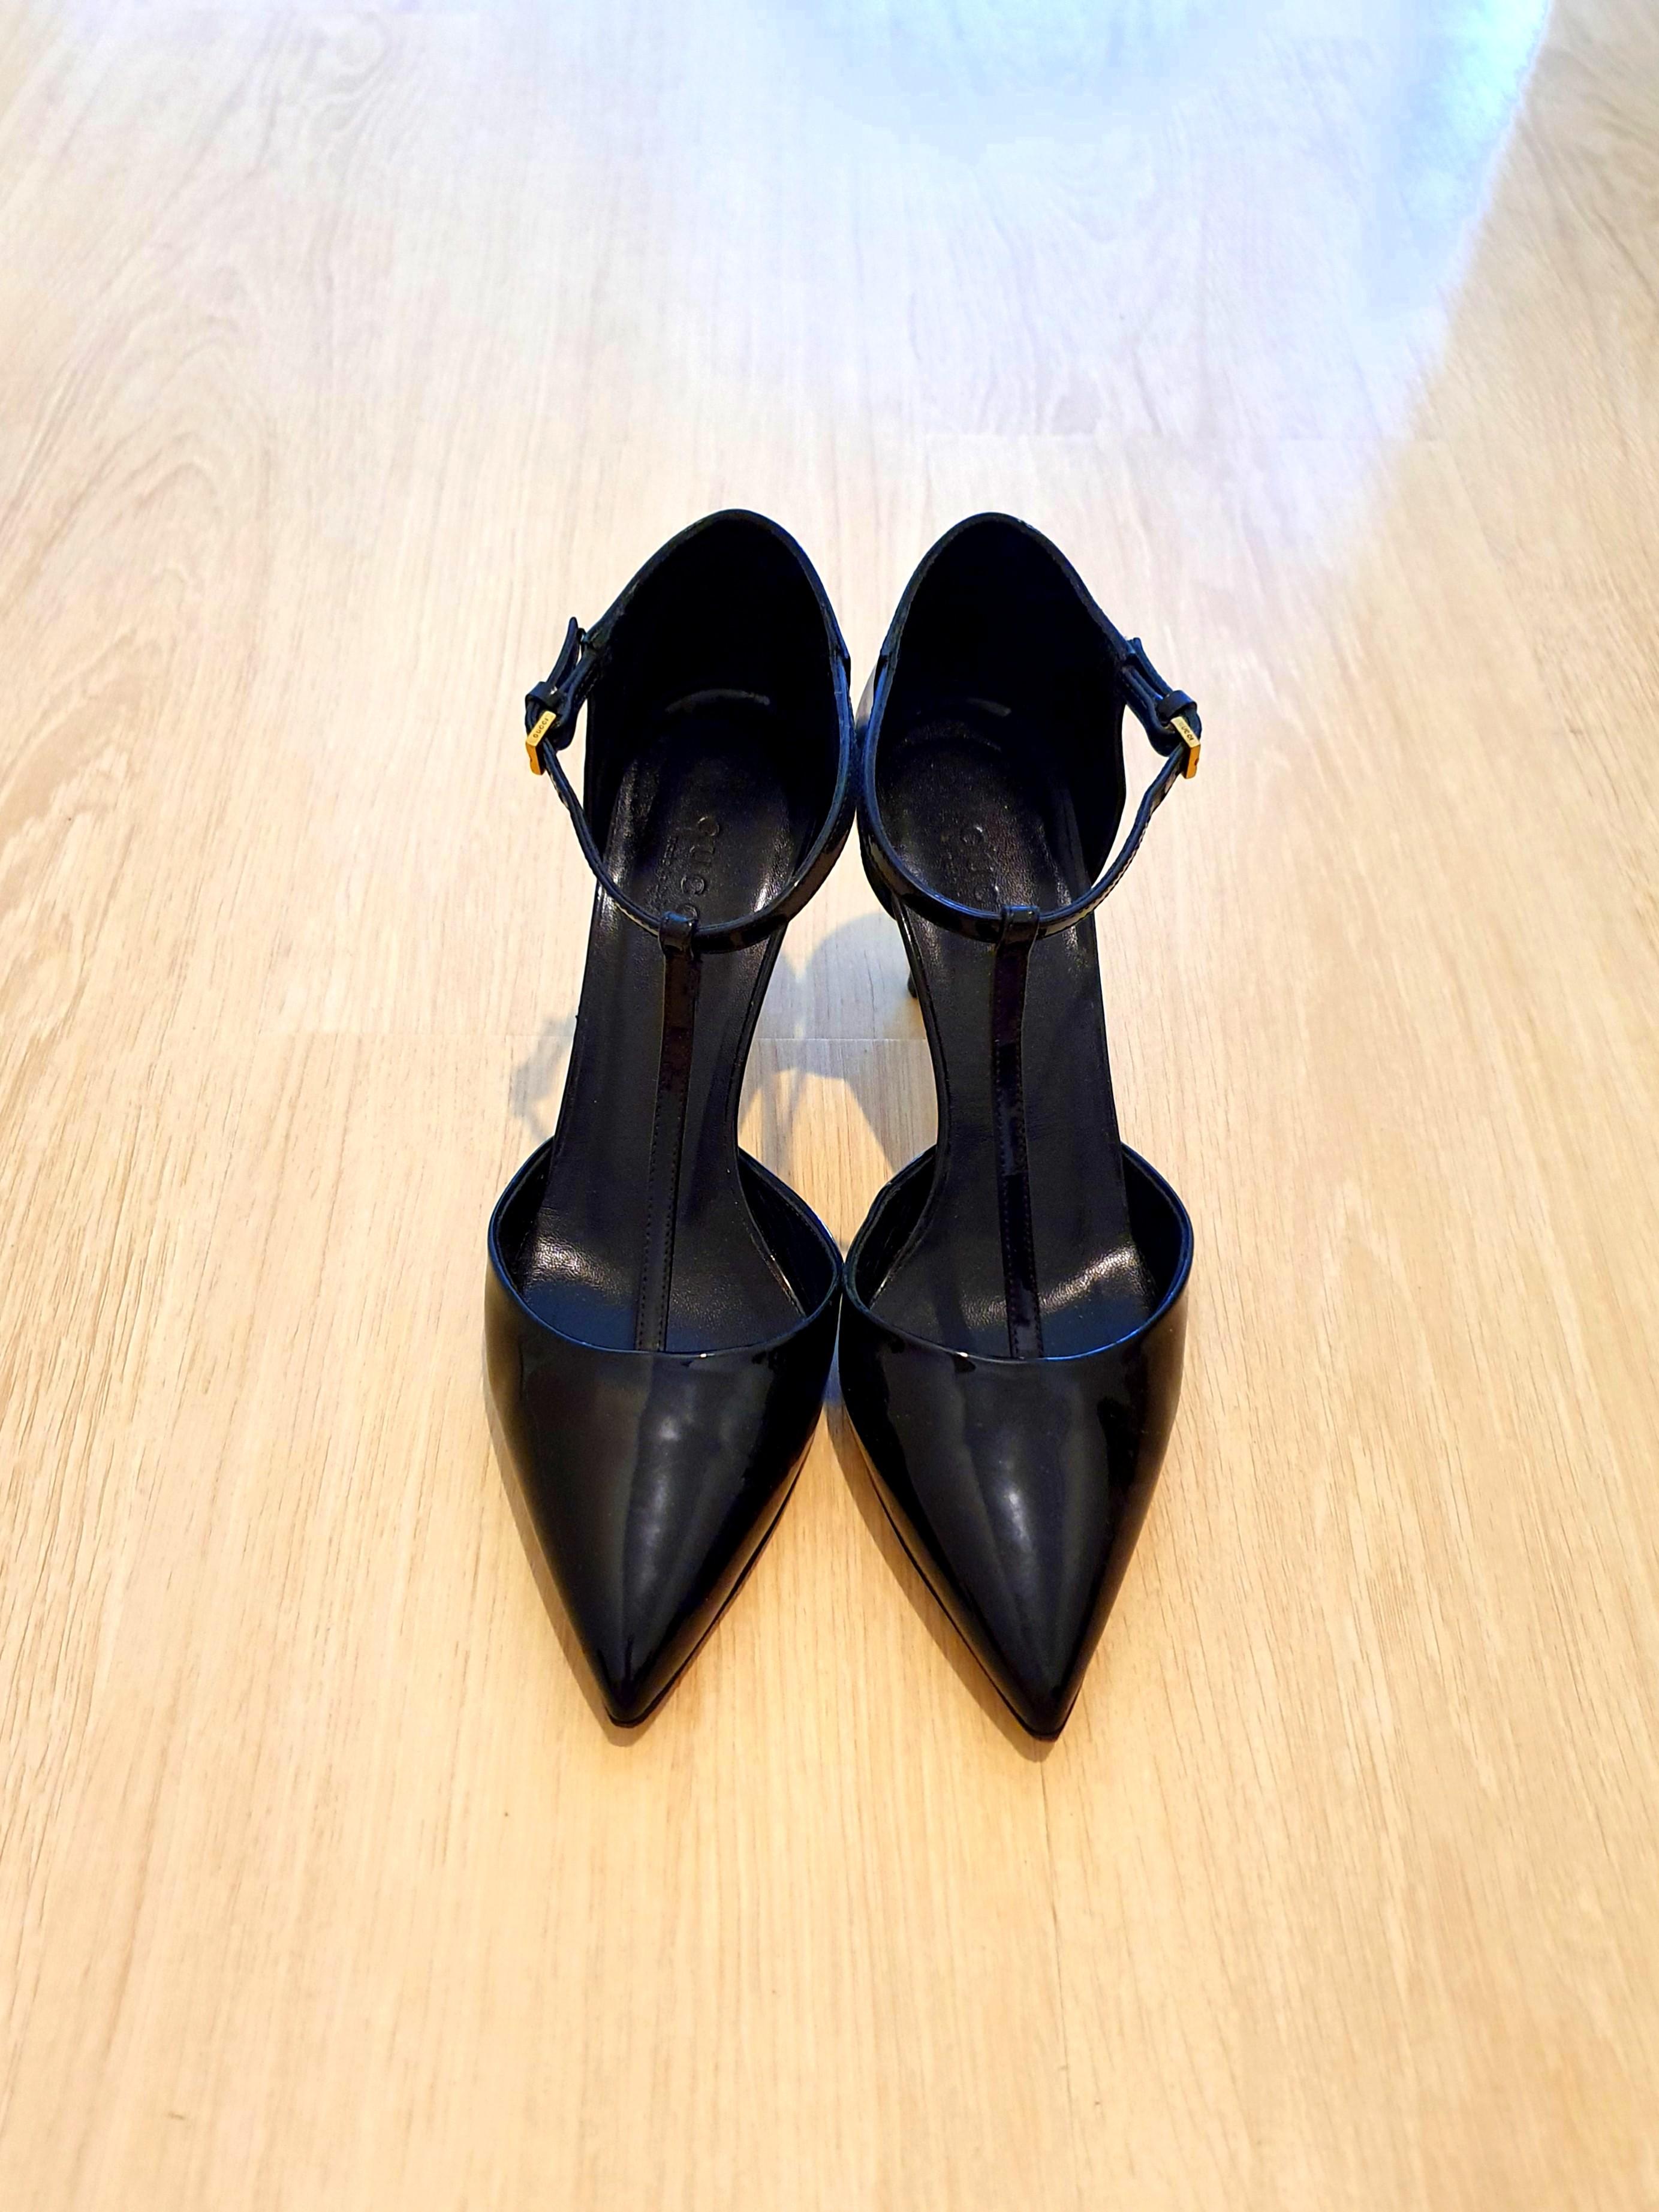 gucci shoes black heels